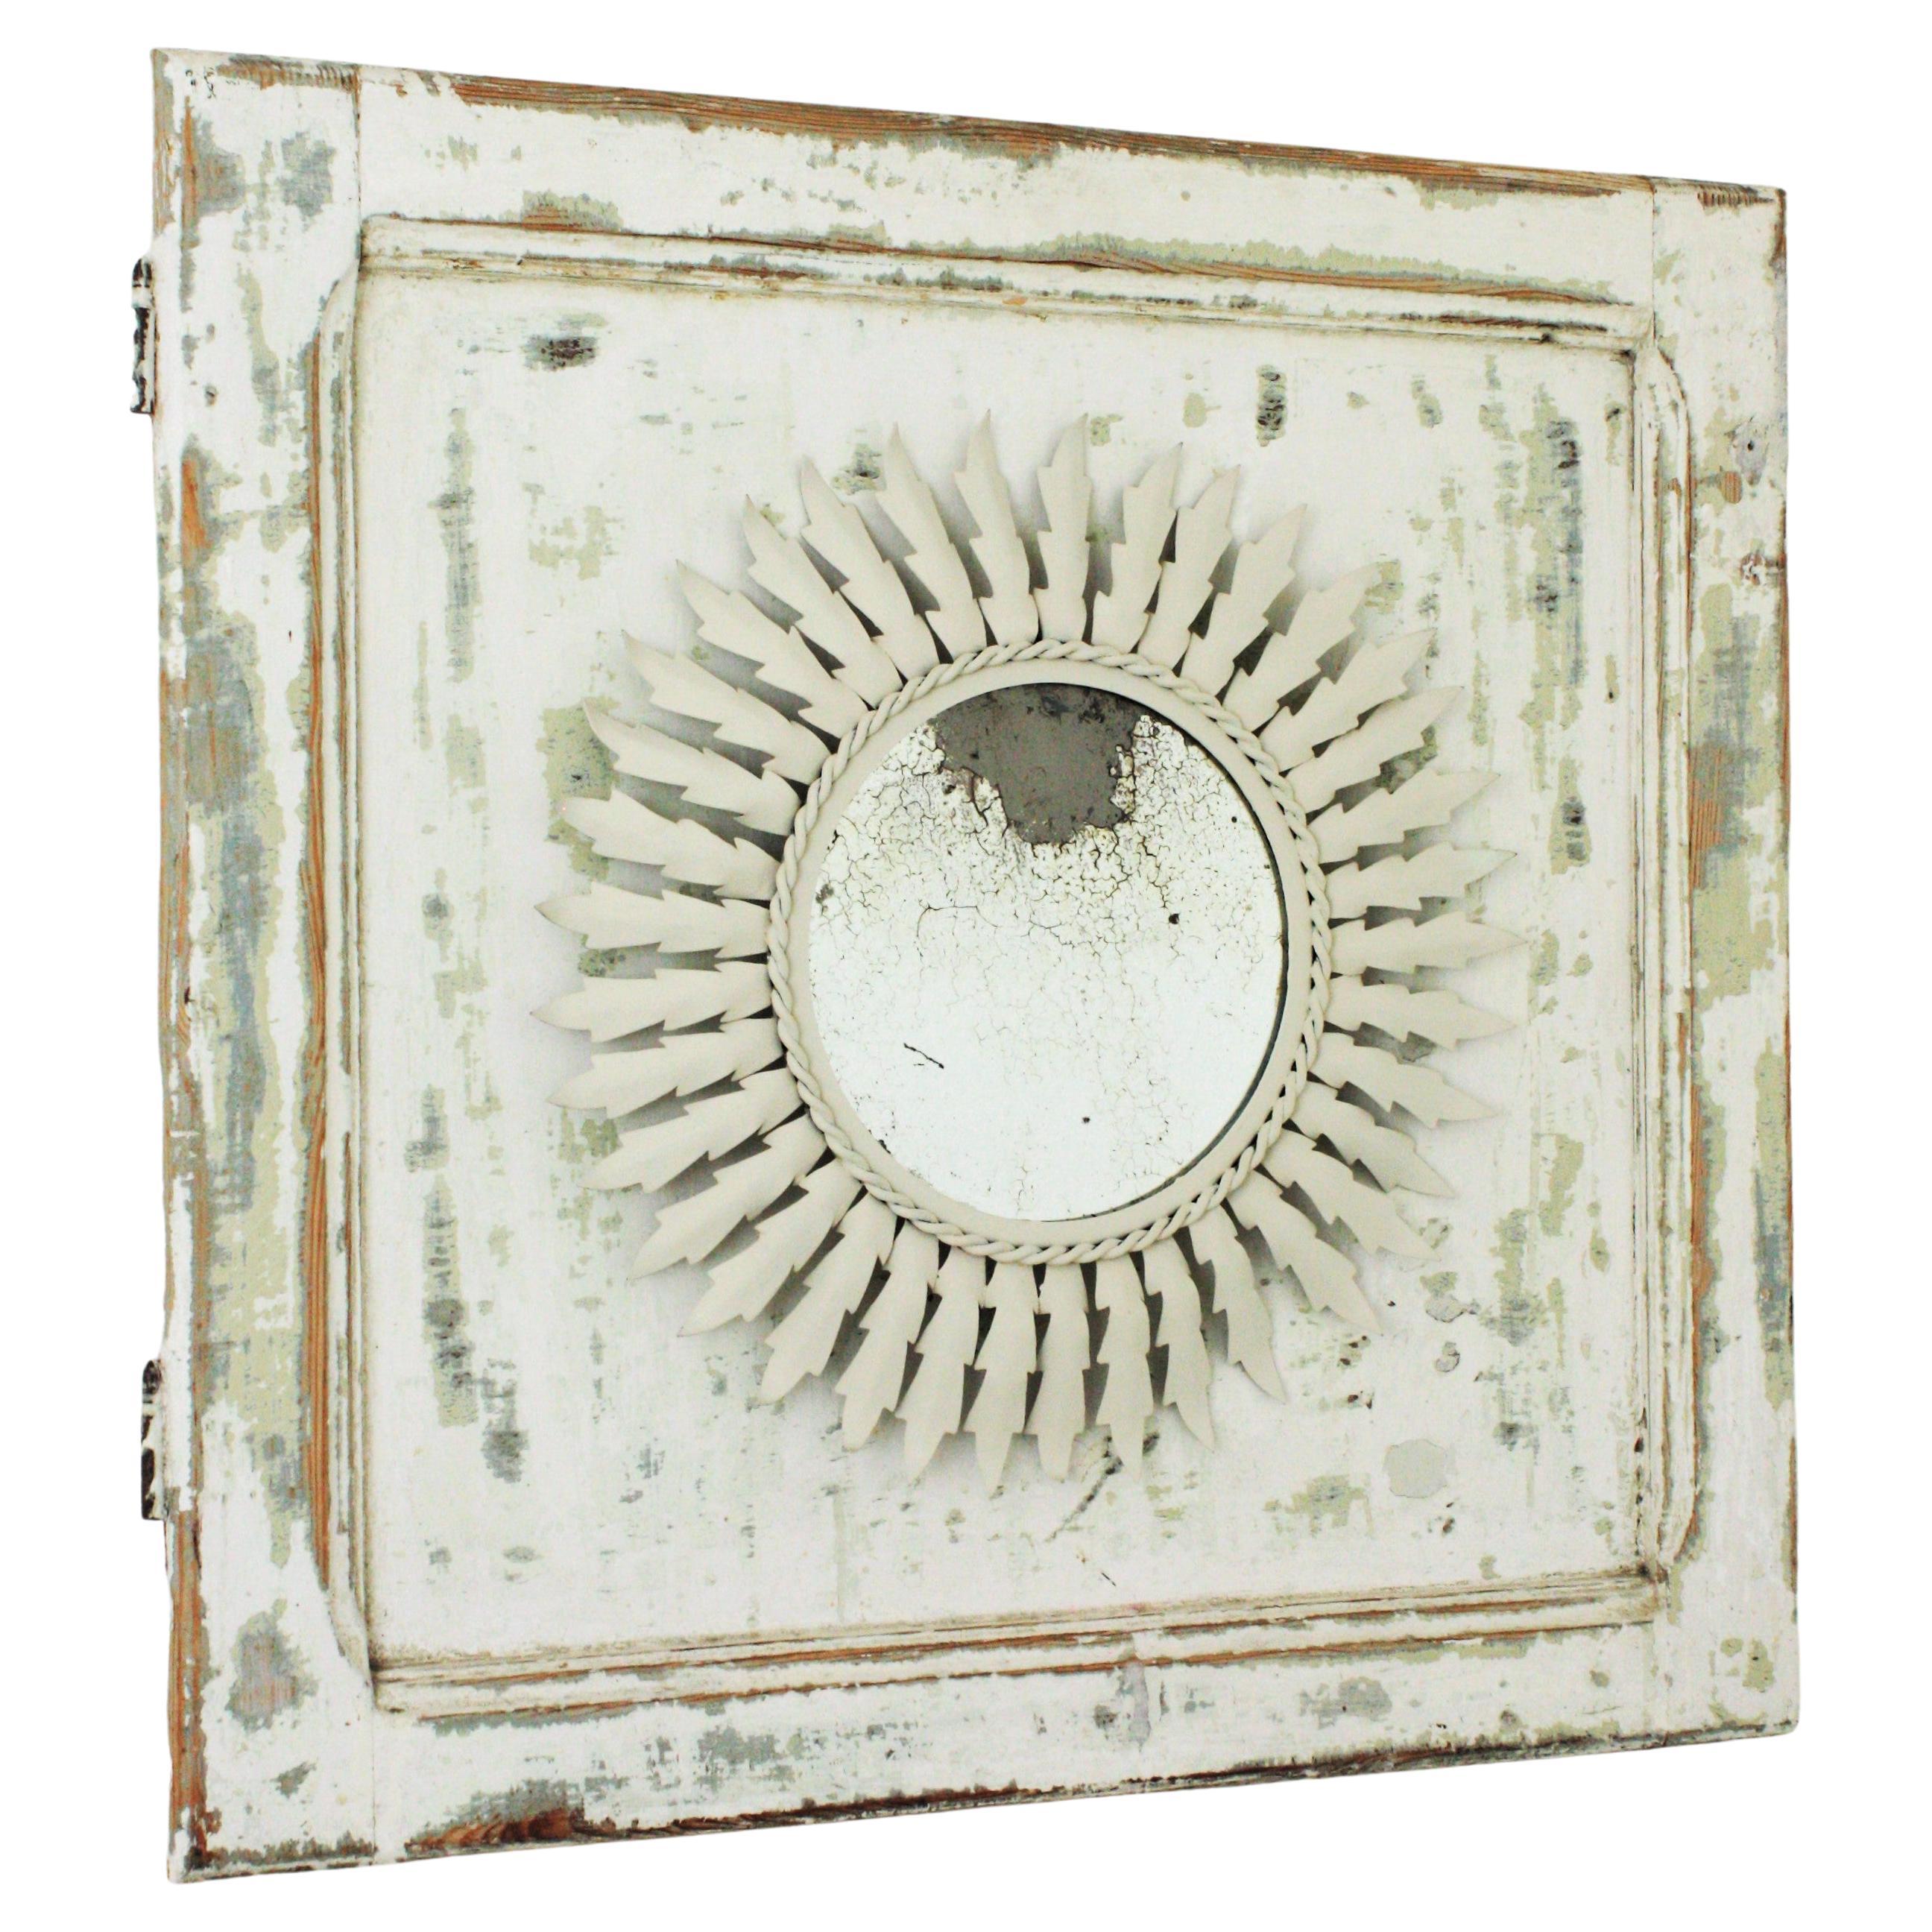 Sunburst-Spiegel aus weißem Metall, umrahmt von einer patinierten Holztür